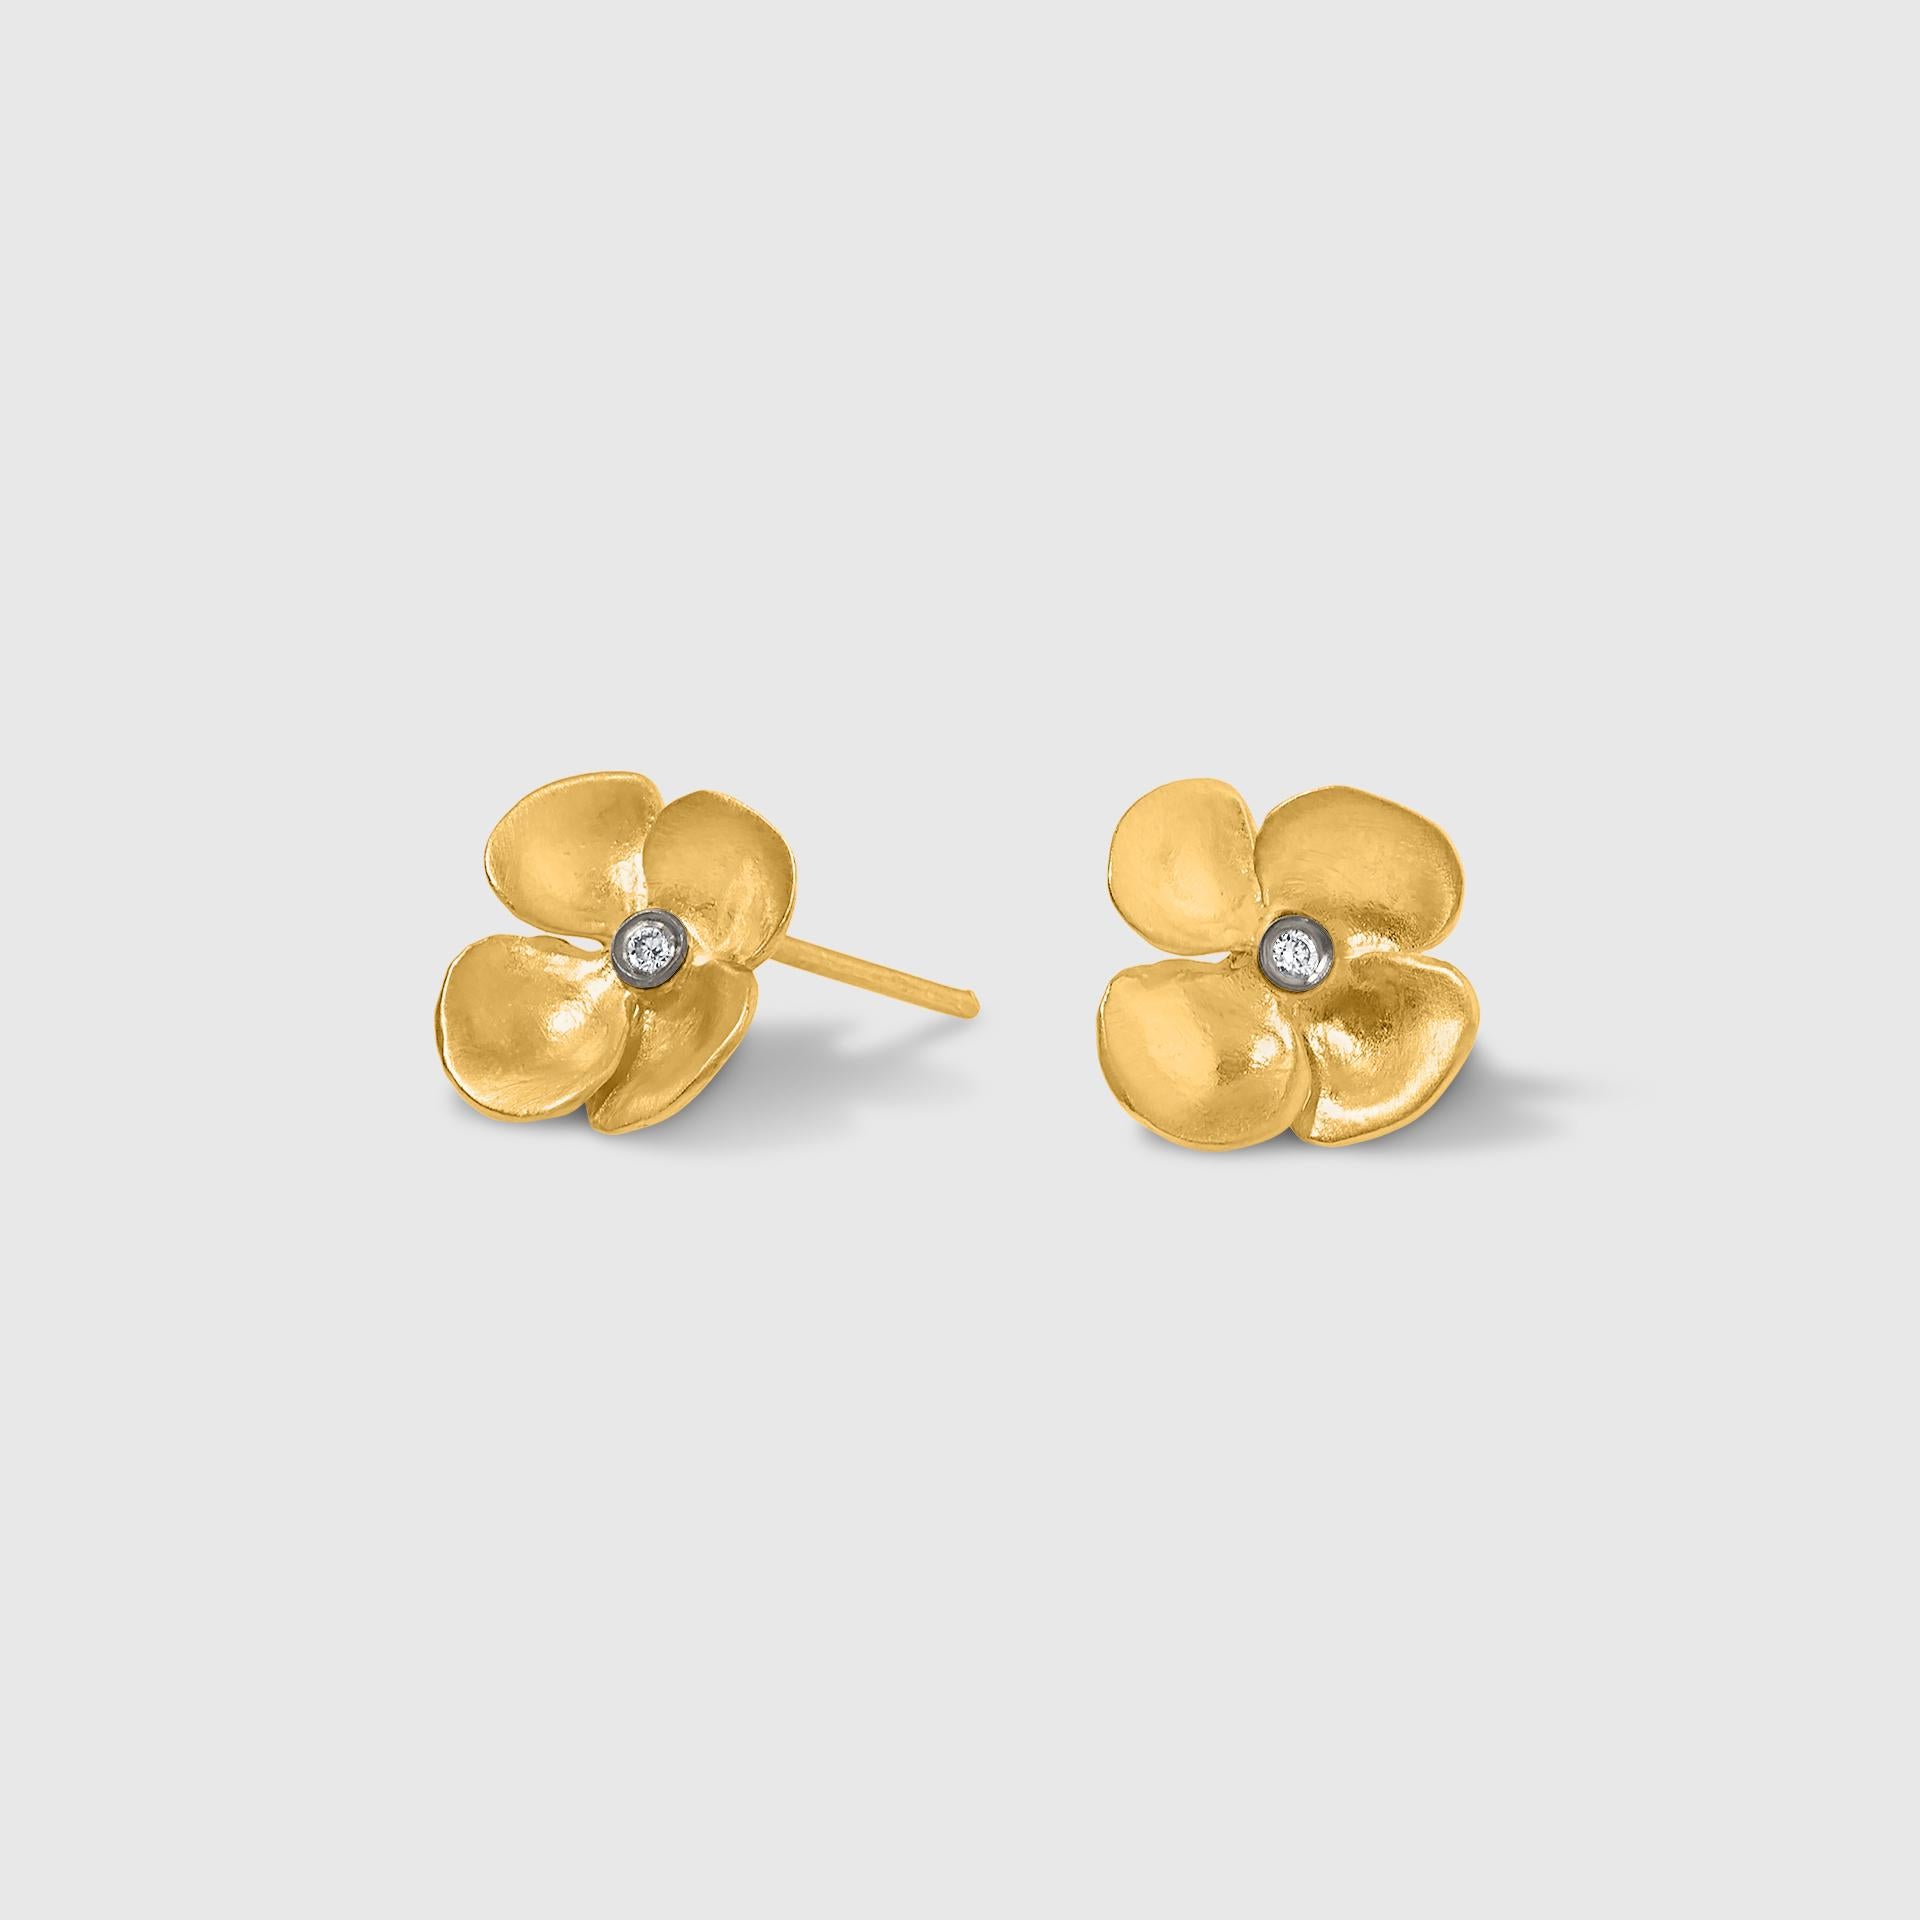 24k gold earrings surfside